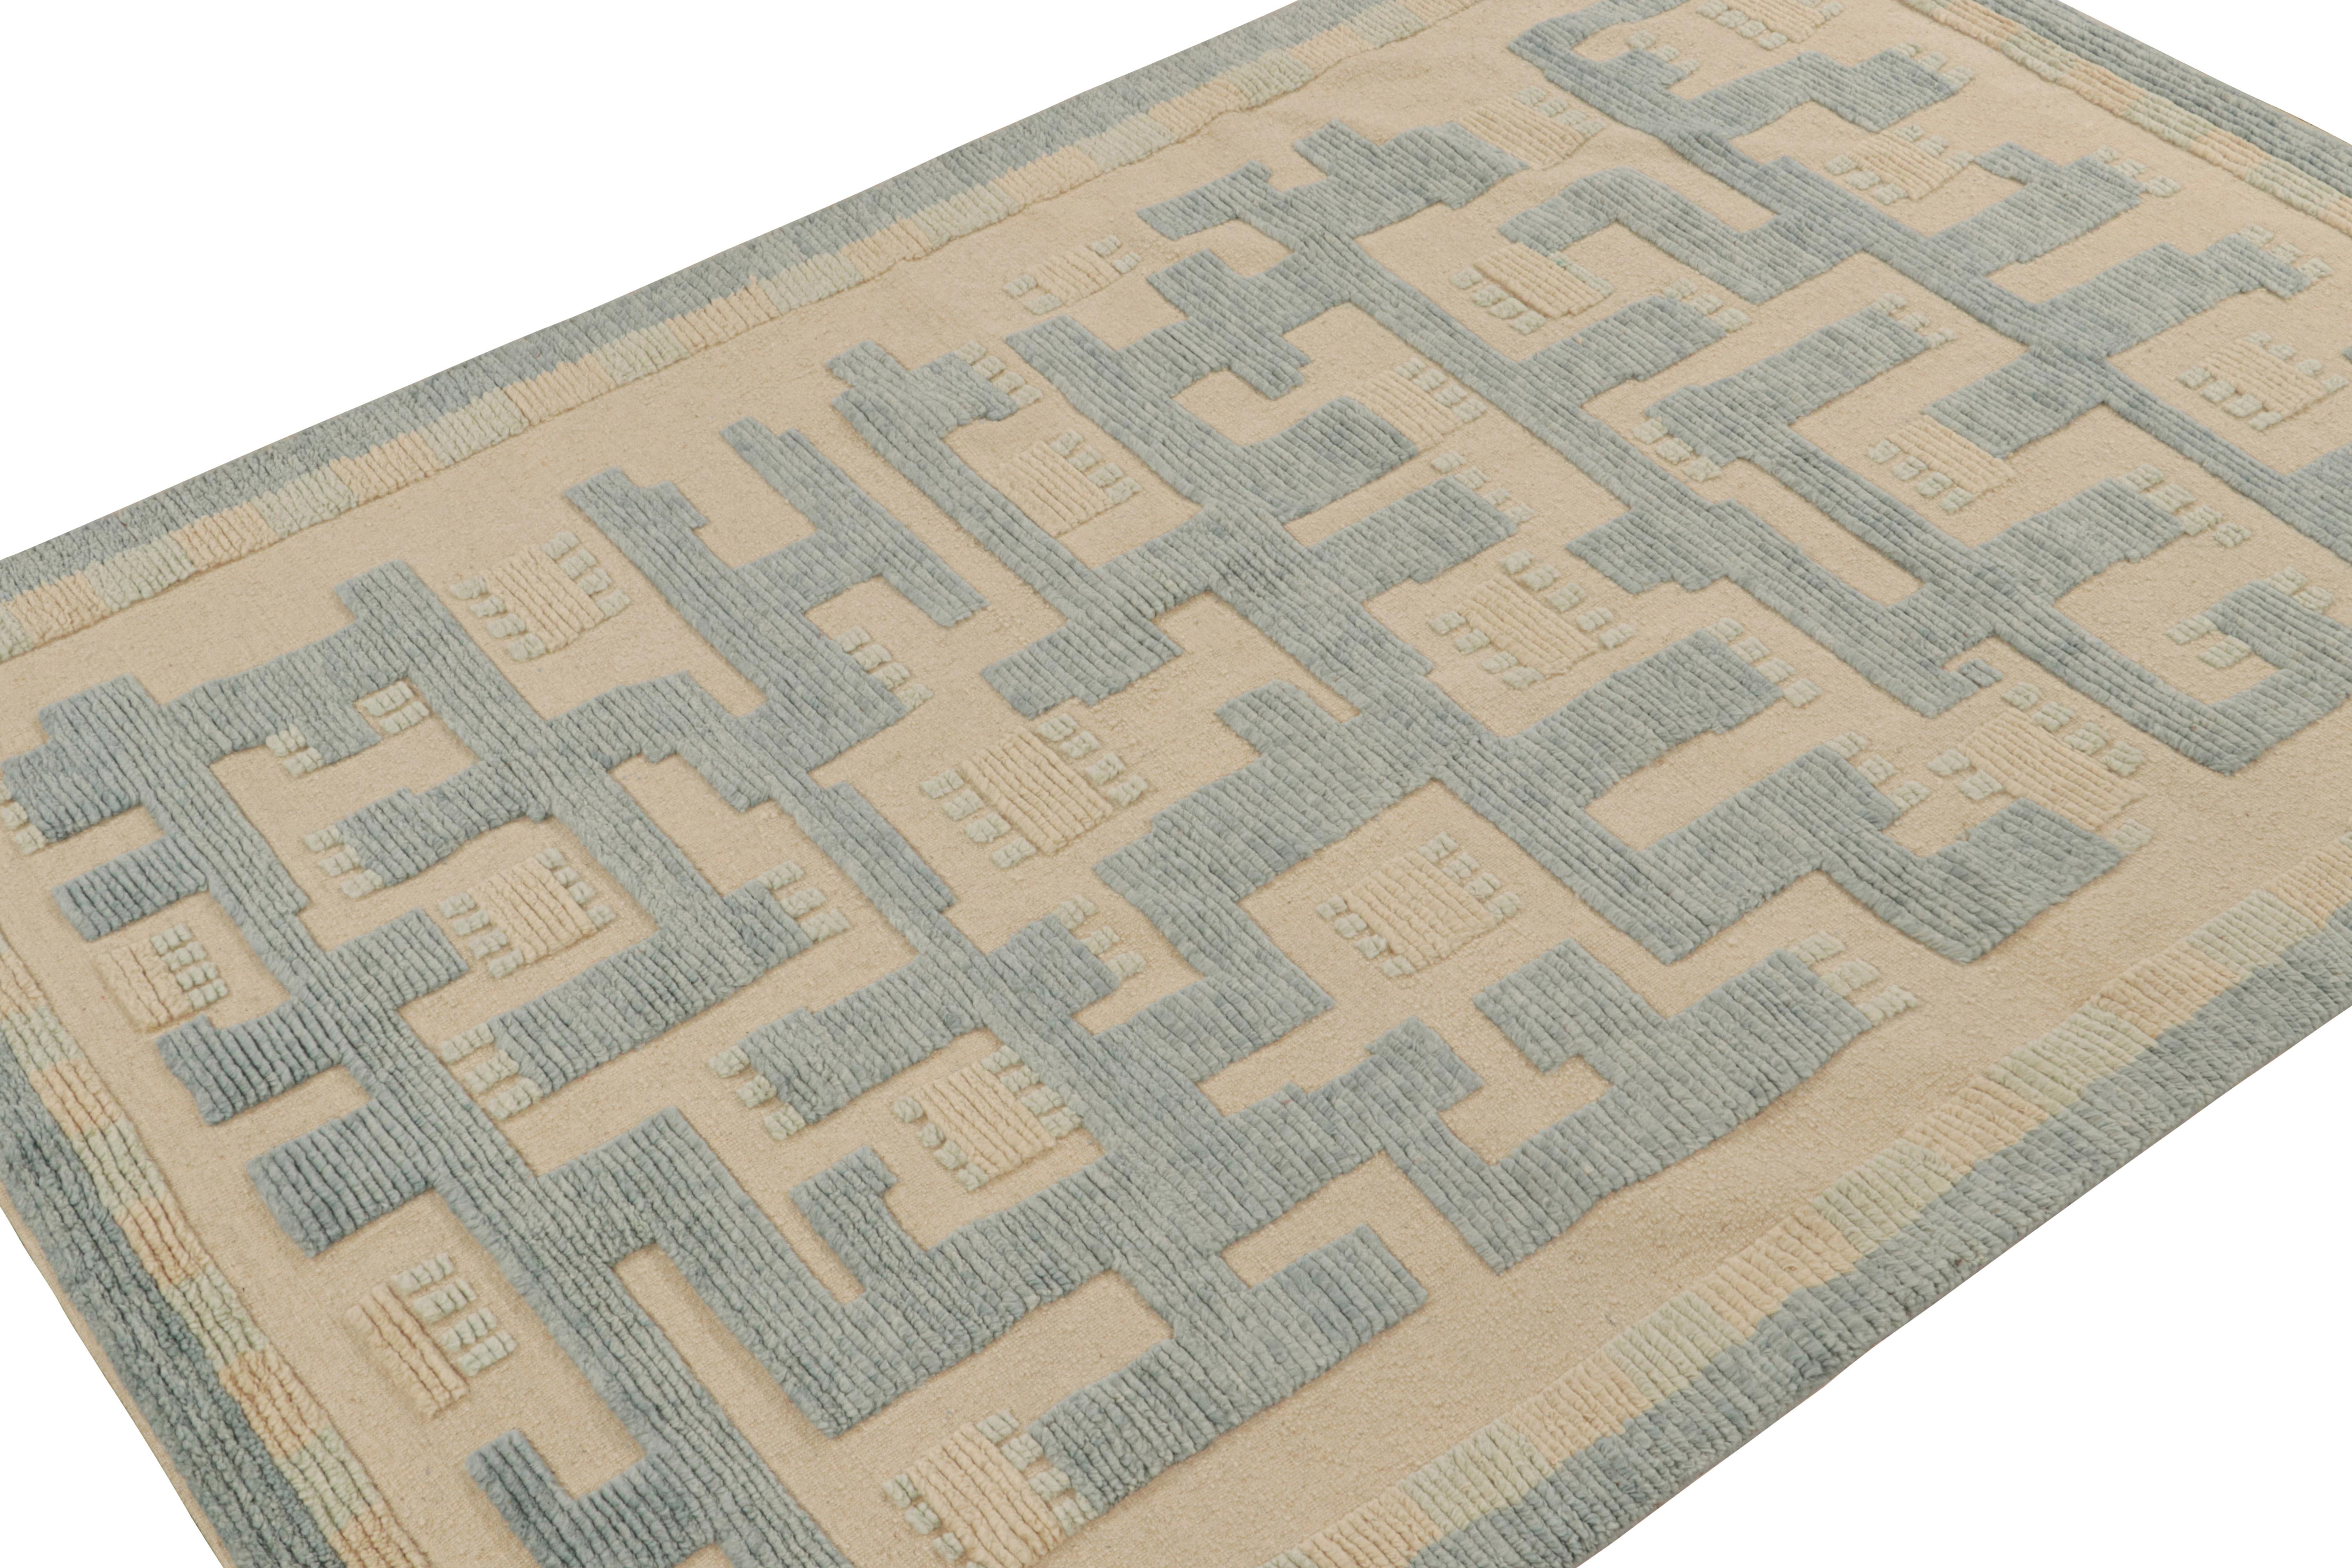 Handgeknüpfter Wollteppich 6x9 aus der skandinavischen Kollektion von Rug & Kilim.

Über das Design:

Der Teppich im schwedischen Stil besticht durch Muster in Blau und Beige. Die Textur hat ein subtiles Hoch-Tief-Element in Verbindung mit der